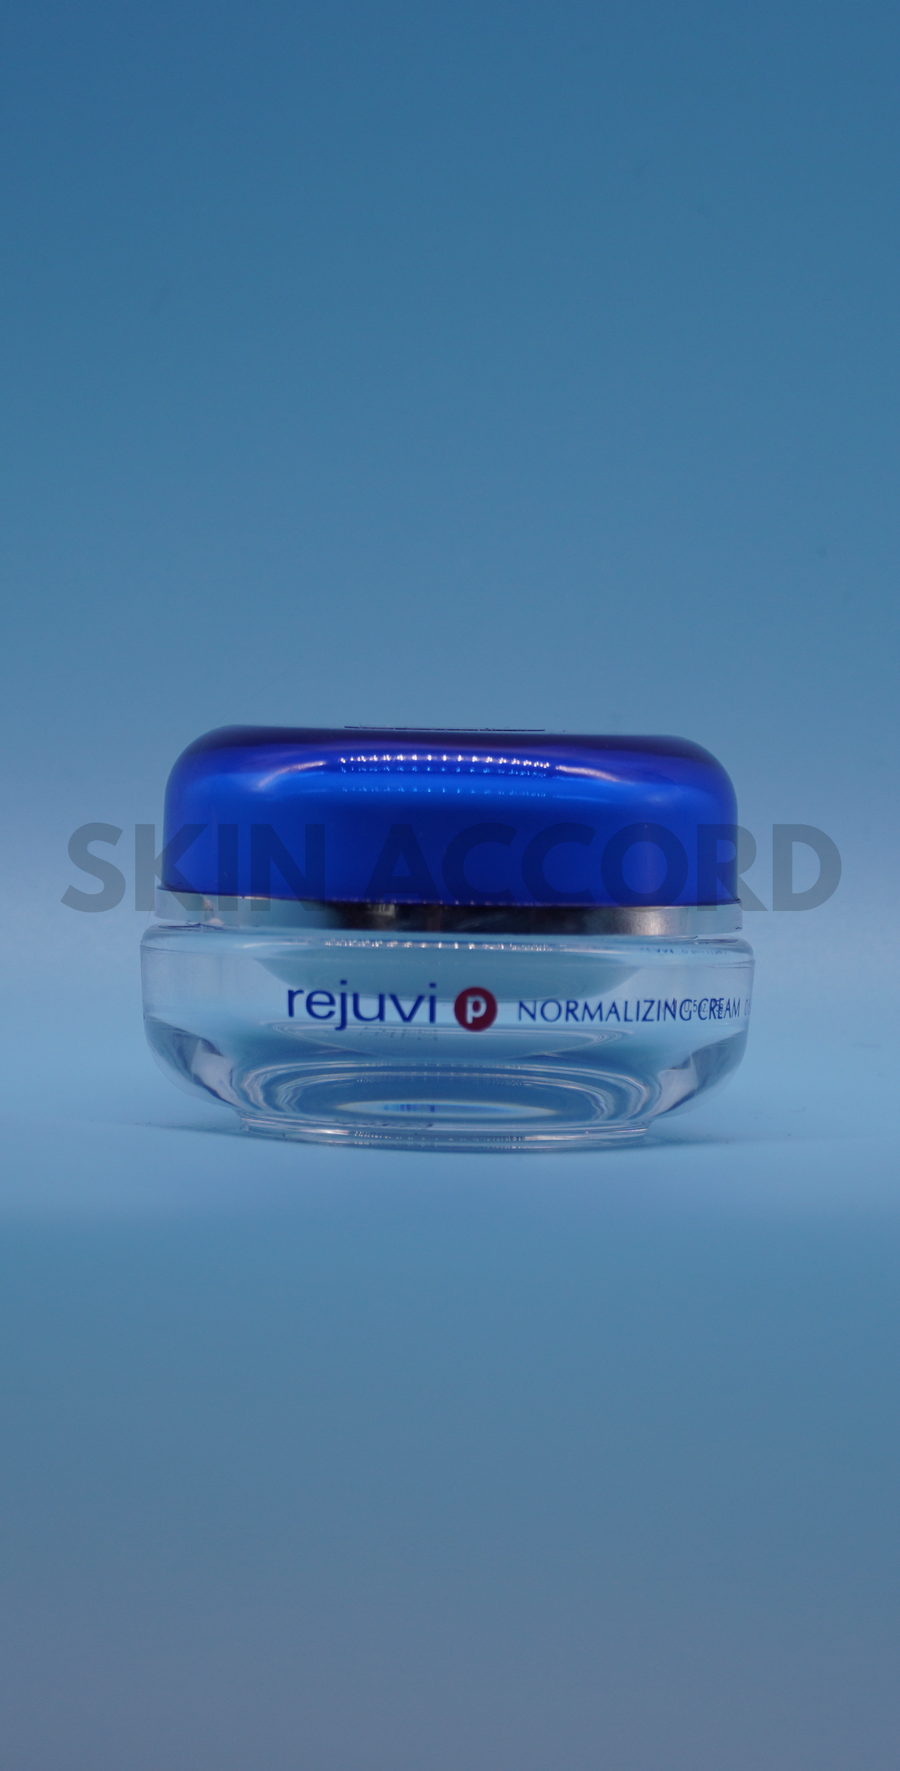 Rejuvi 'p' Normalizing Cream for Open Acne